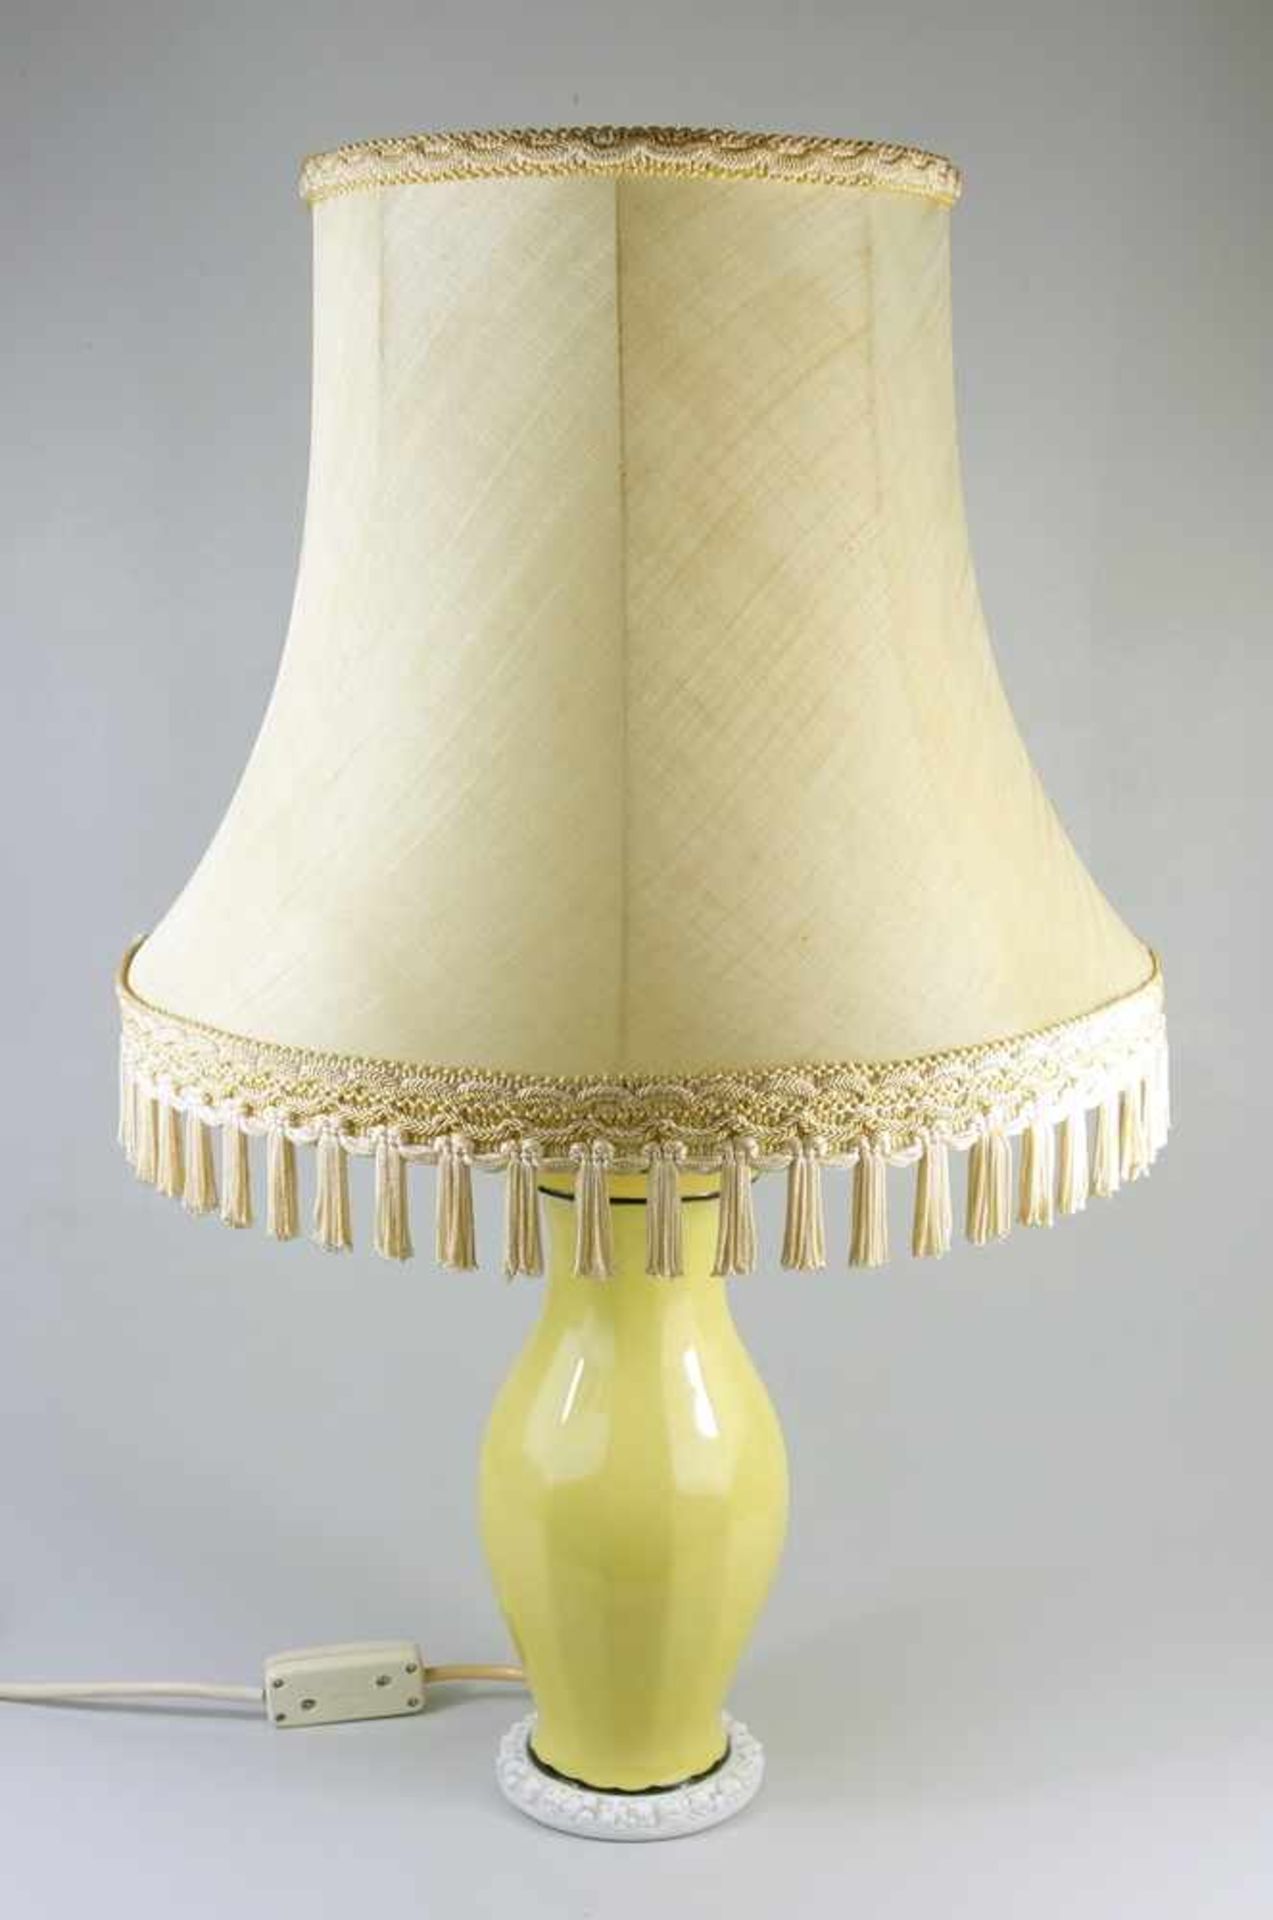 Lampe, Rosenthal, Entwurf Ph.Rosenthal, um 1920, runder Stand mit Obstrelief, vieleckige,